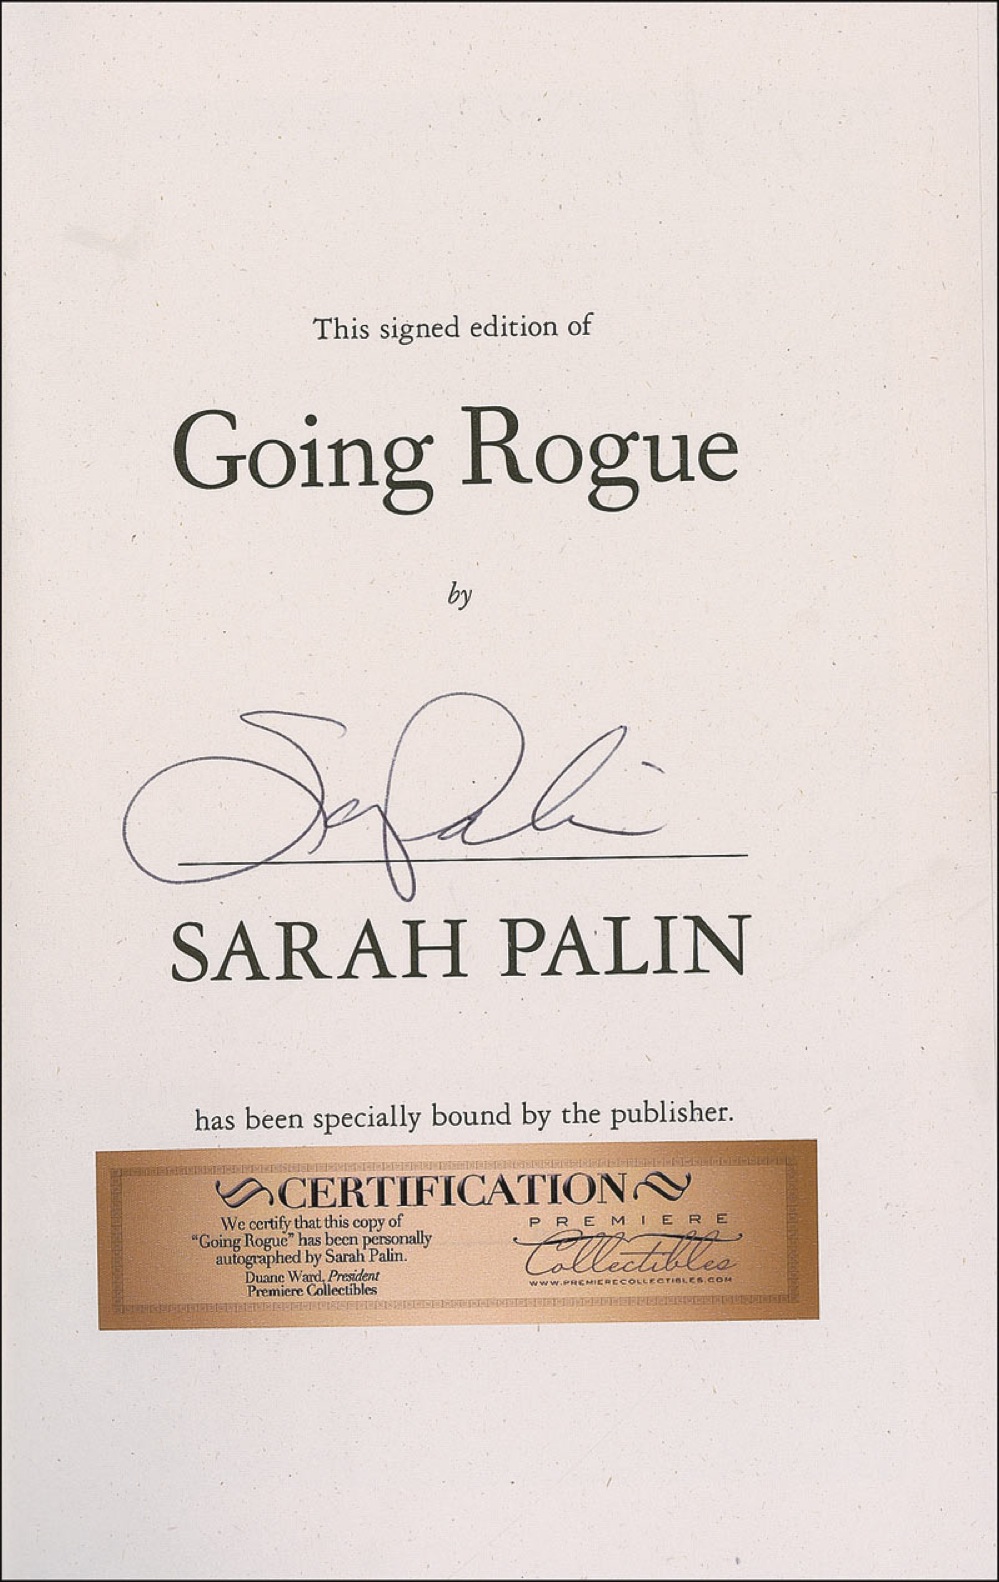 Lot #346 Sarah Palin